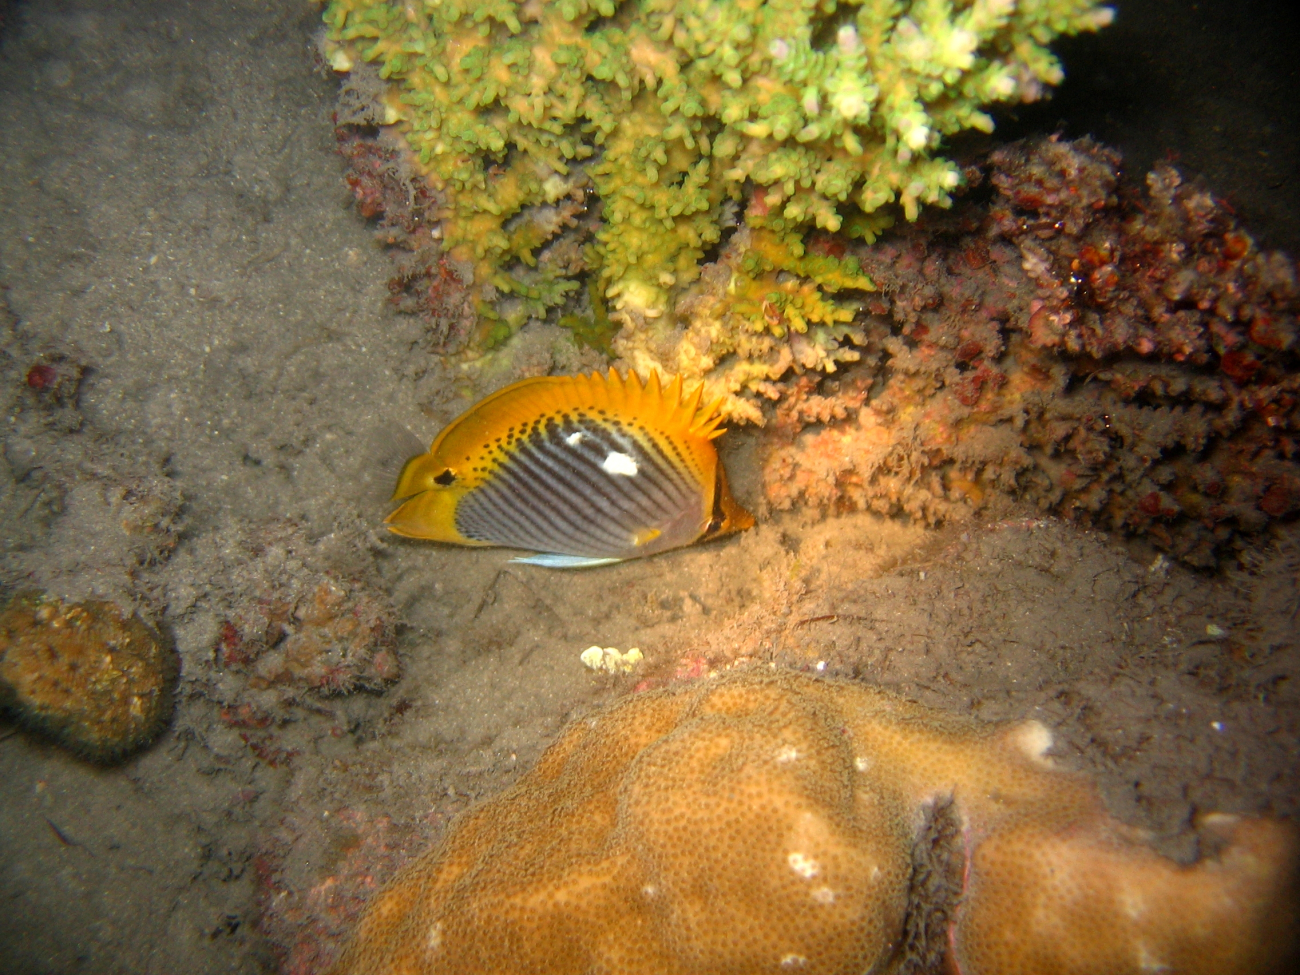 Spottail butterflyfish (Chaetodon ocellicaudus)